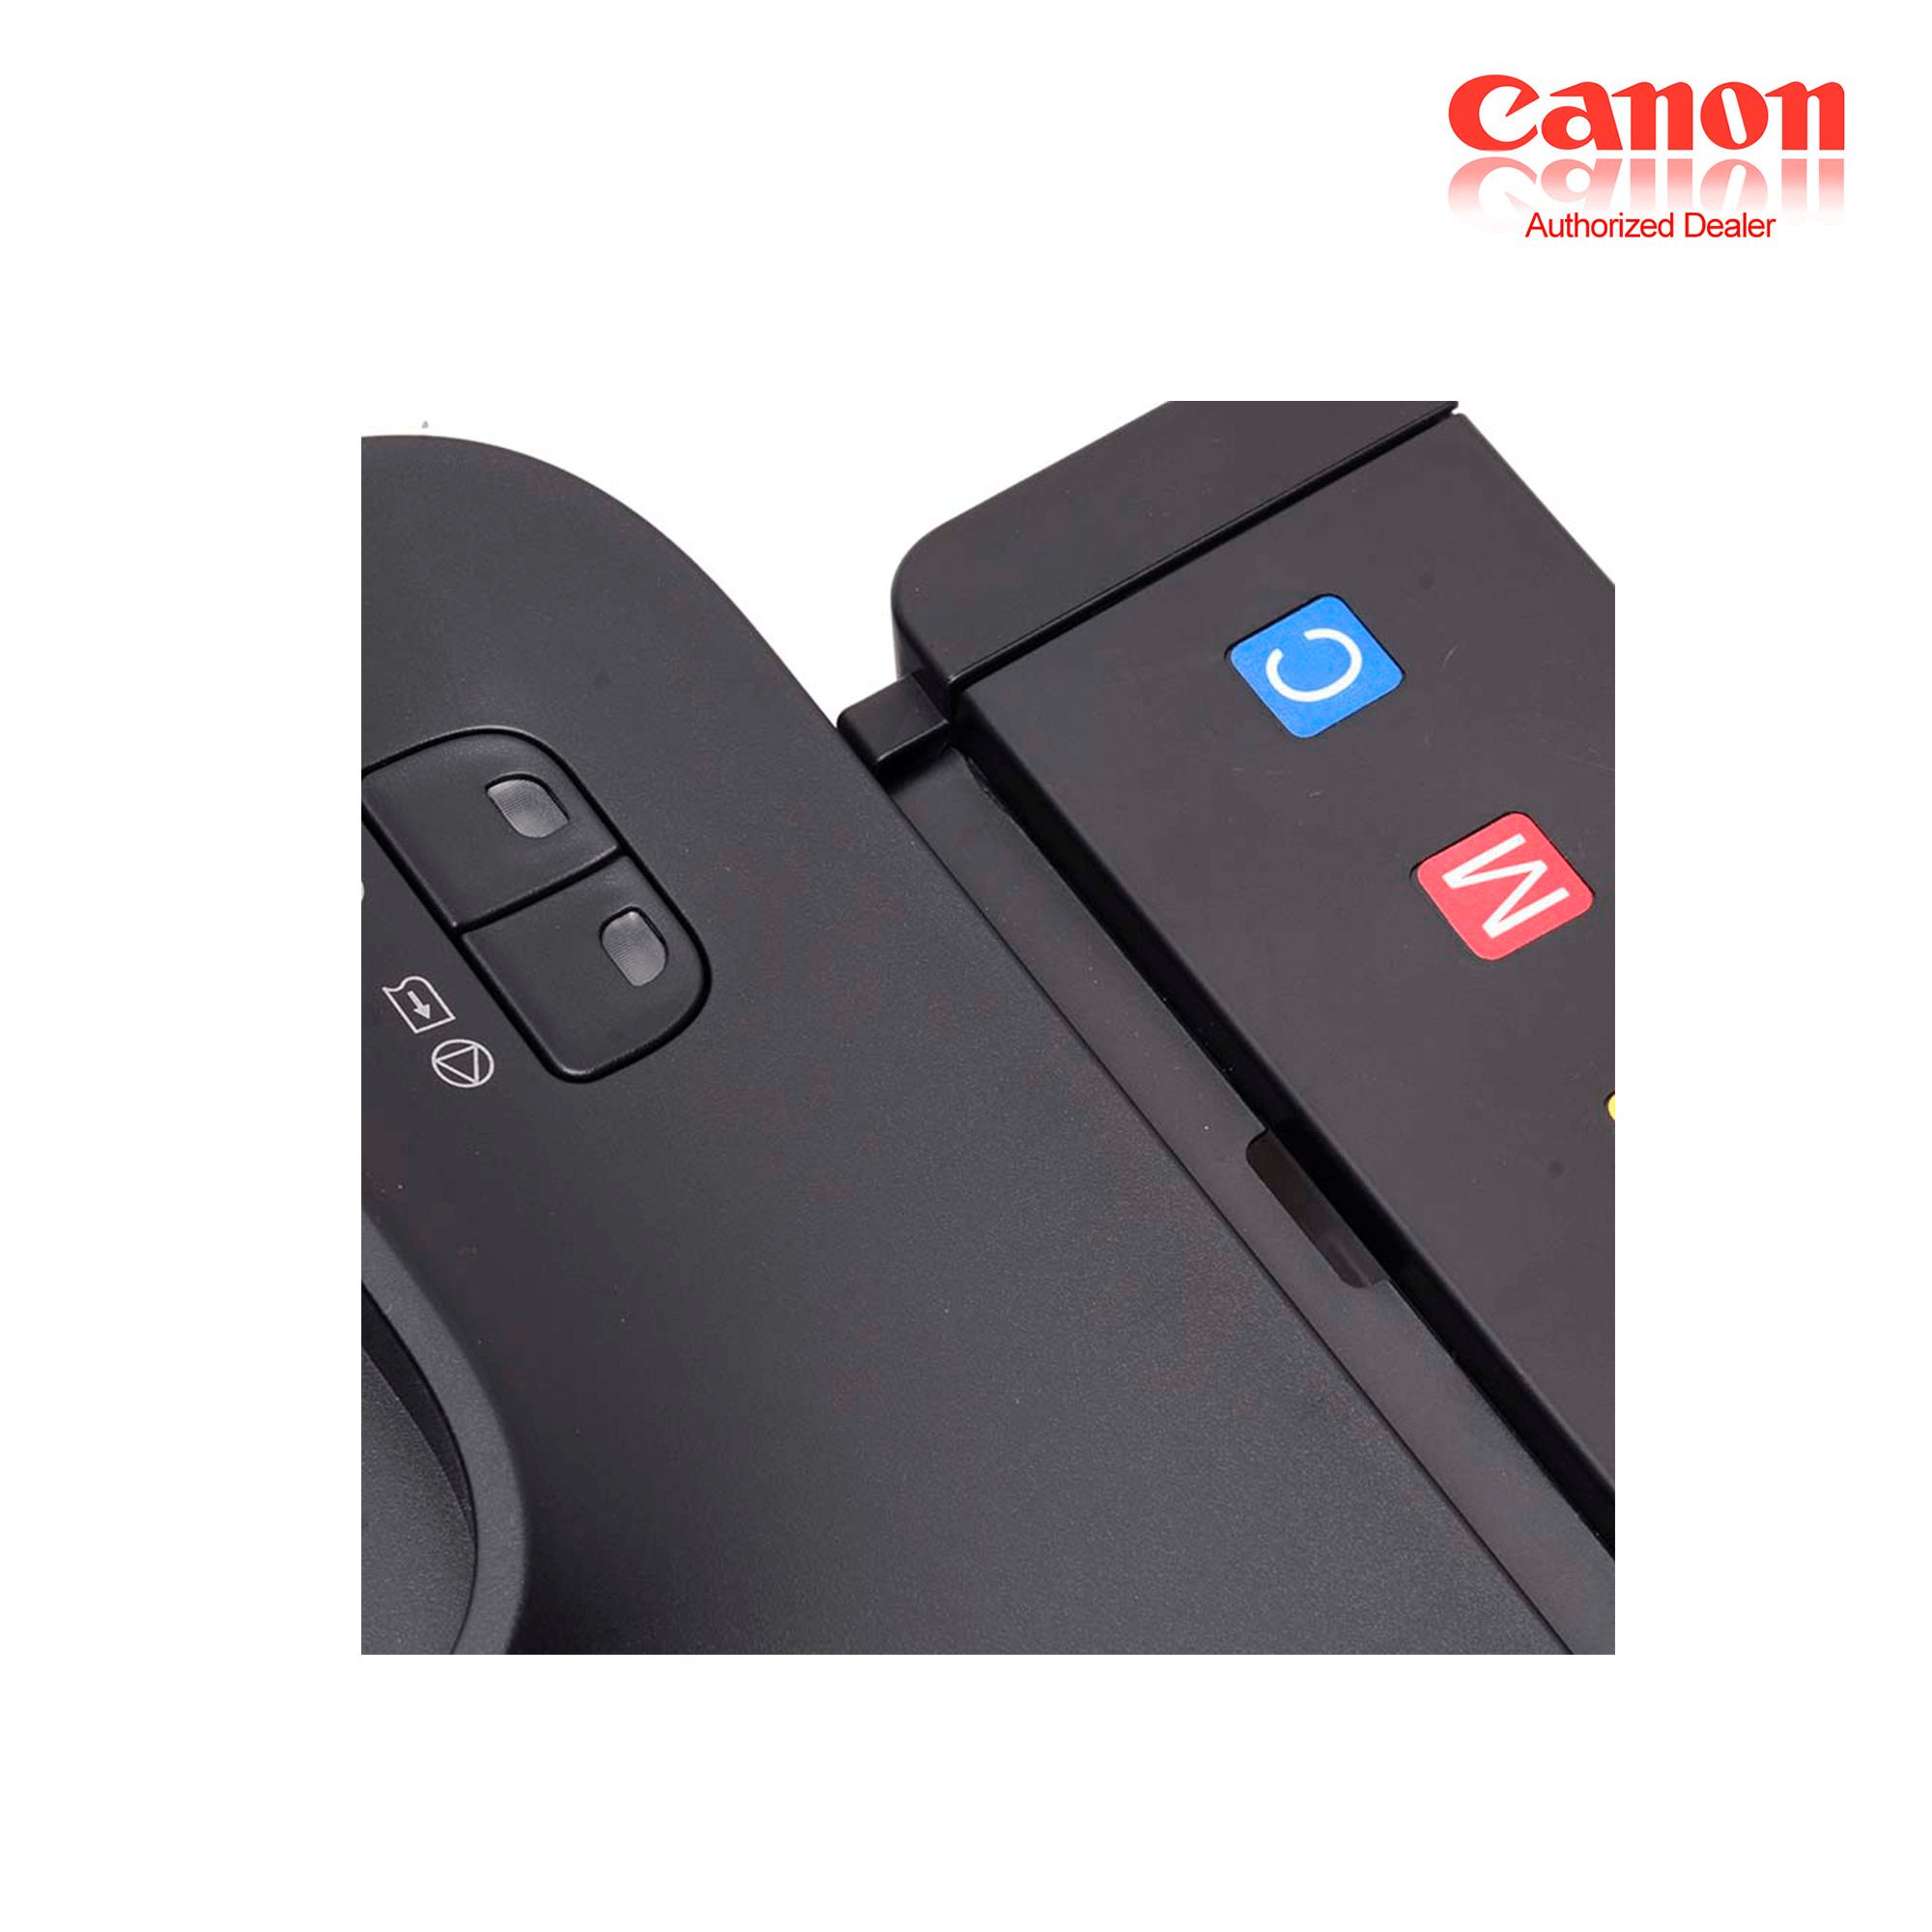 canon printer pixma ip2770 ink